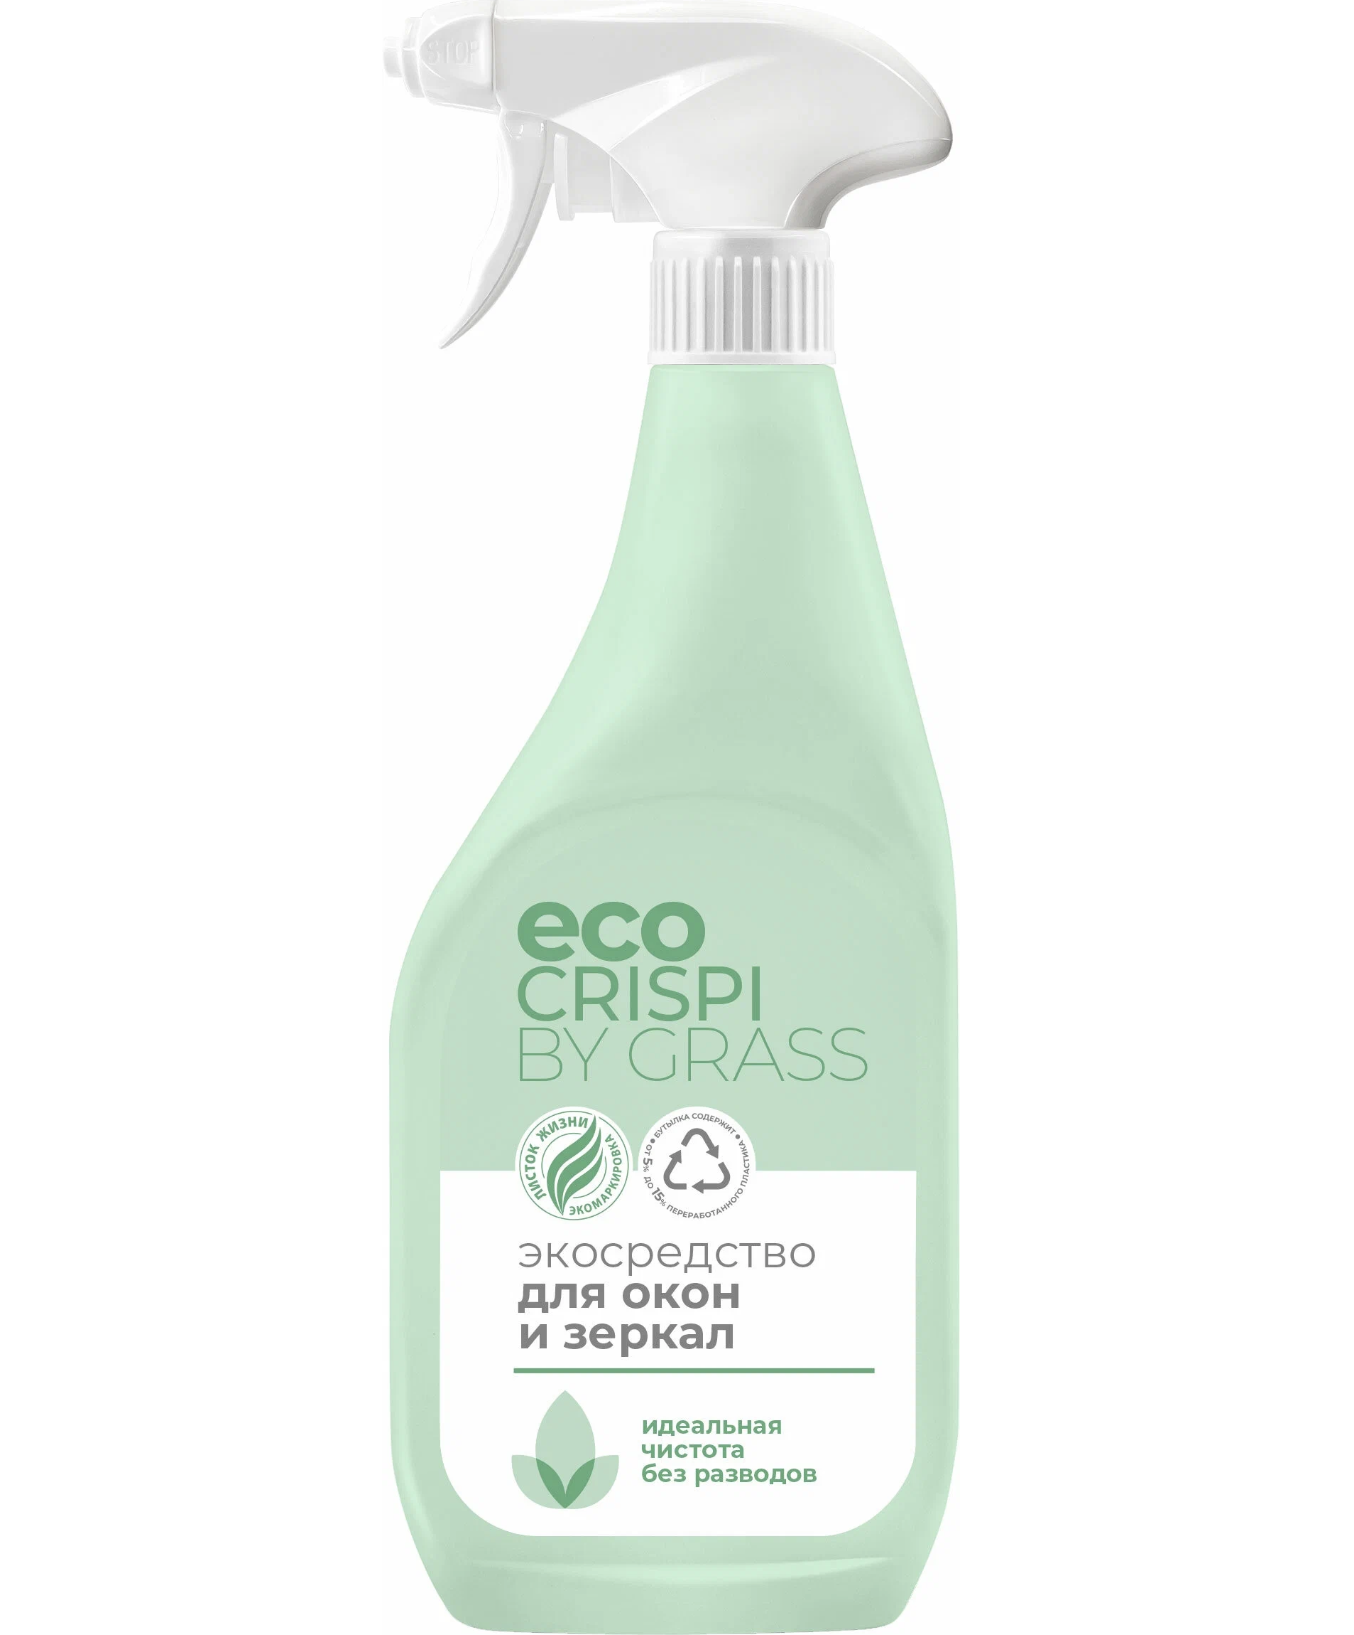   / Grass Eco Crispi -      600 